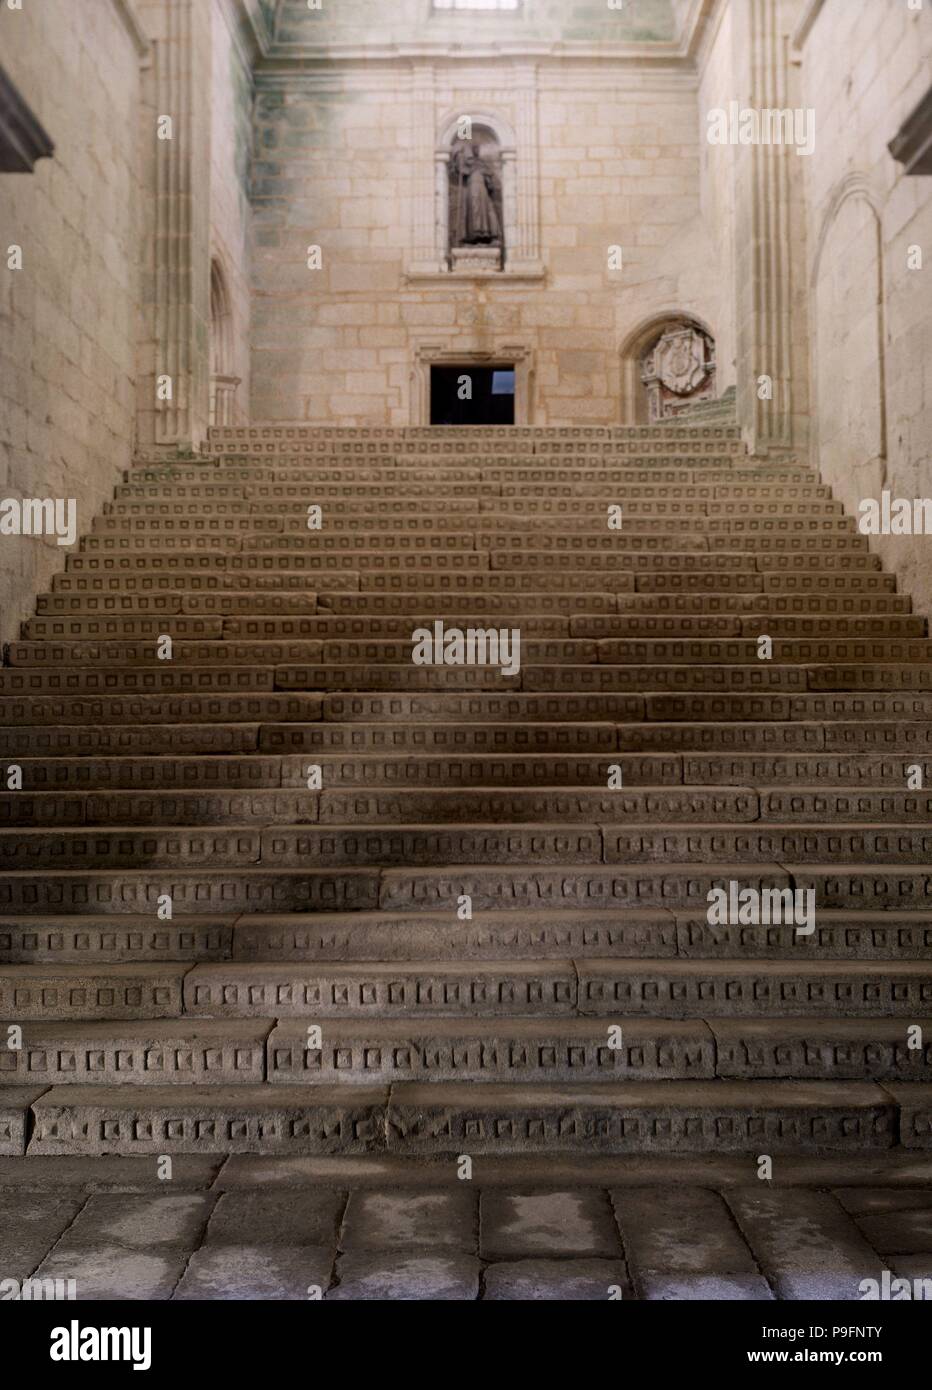 Historia de una escalera hi-res stock photography and images - Alamy